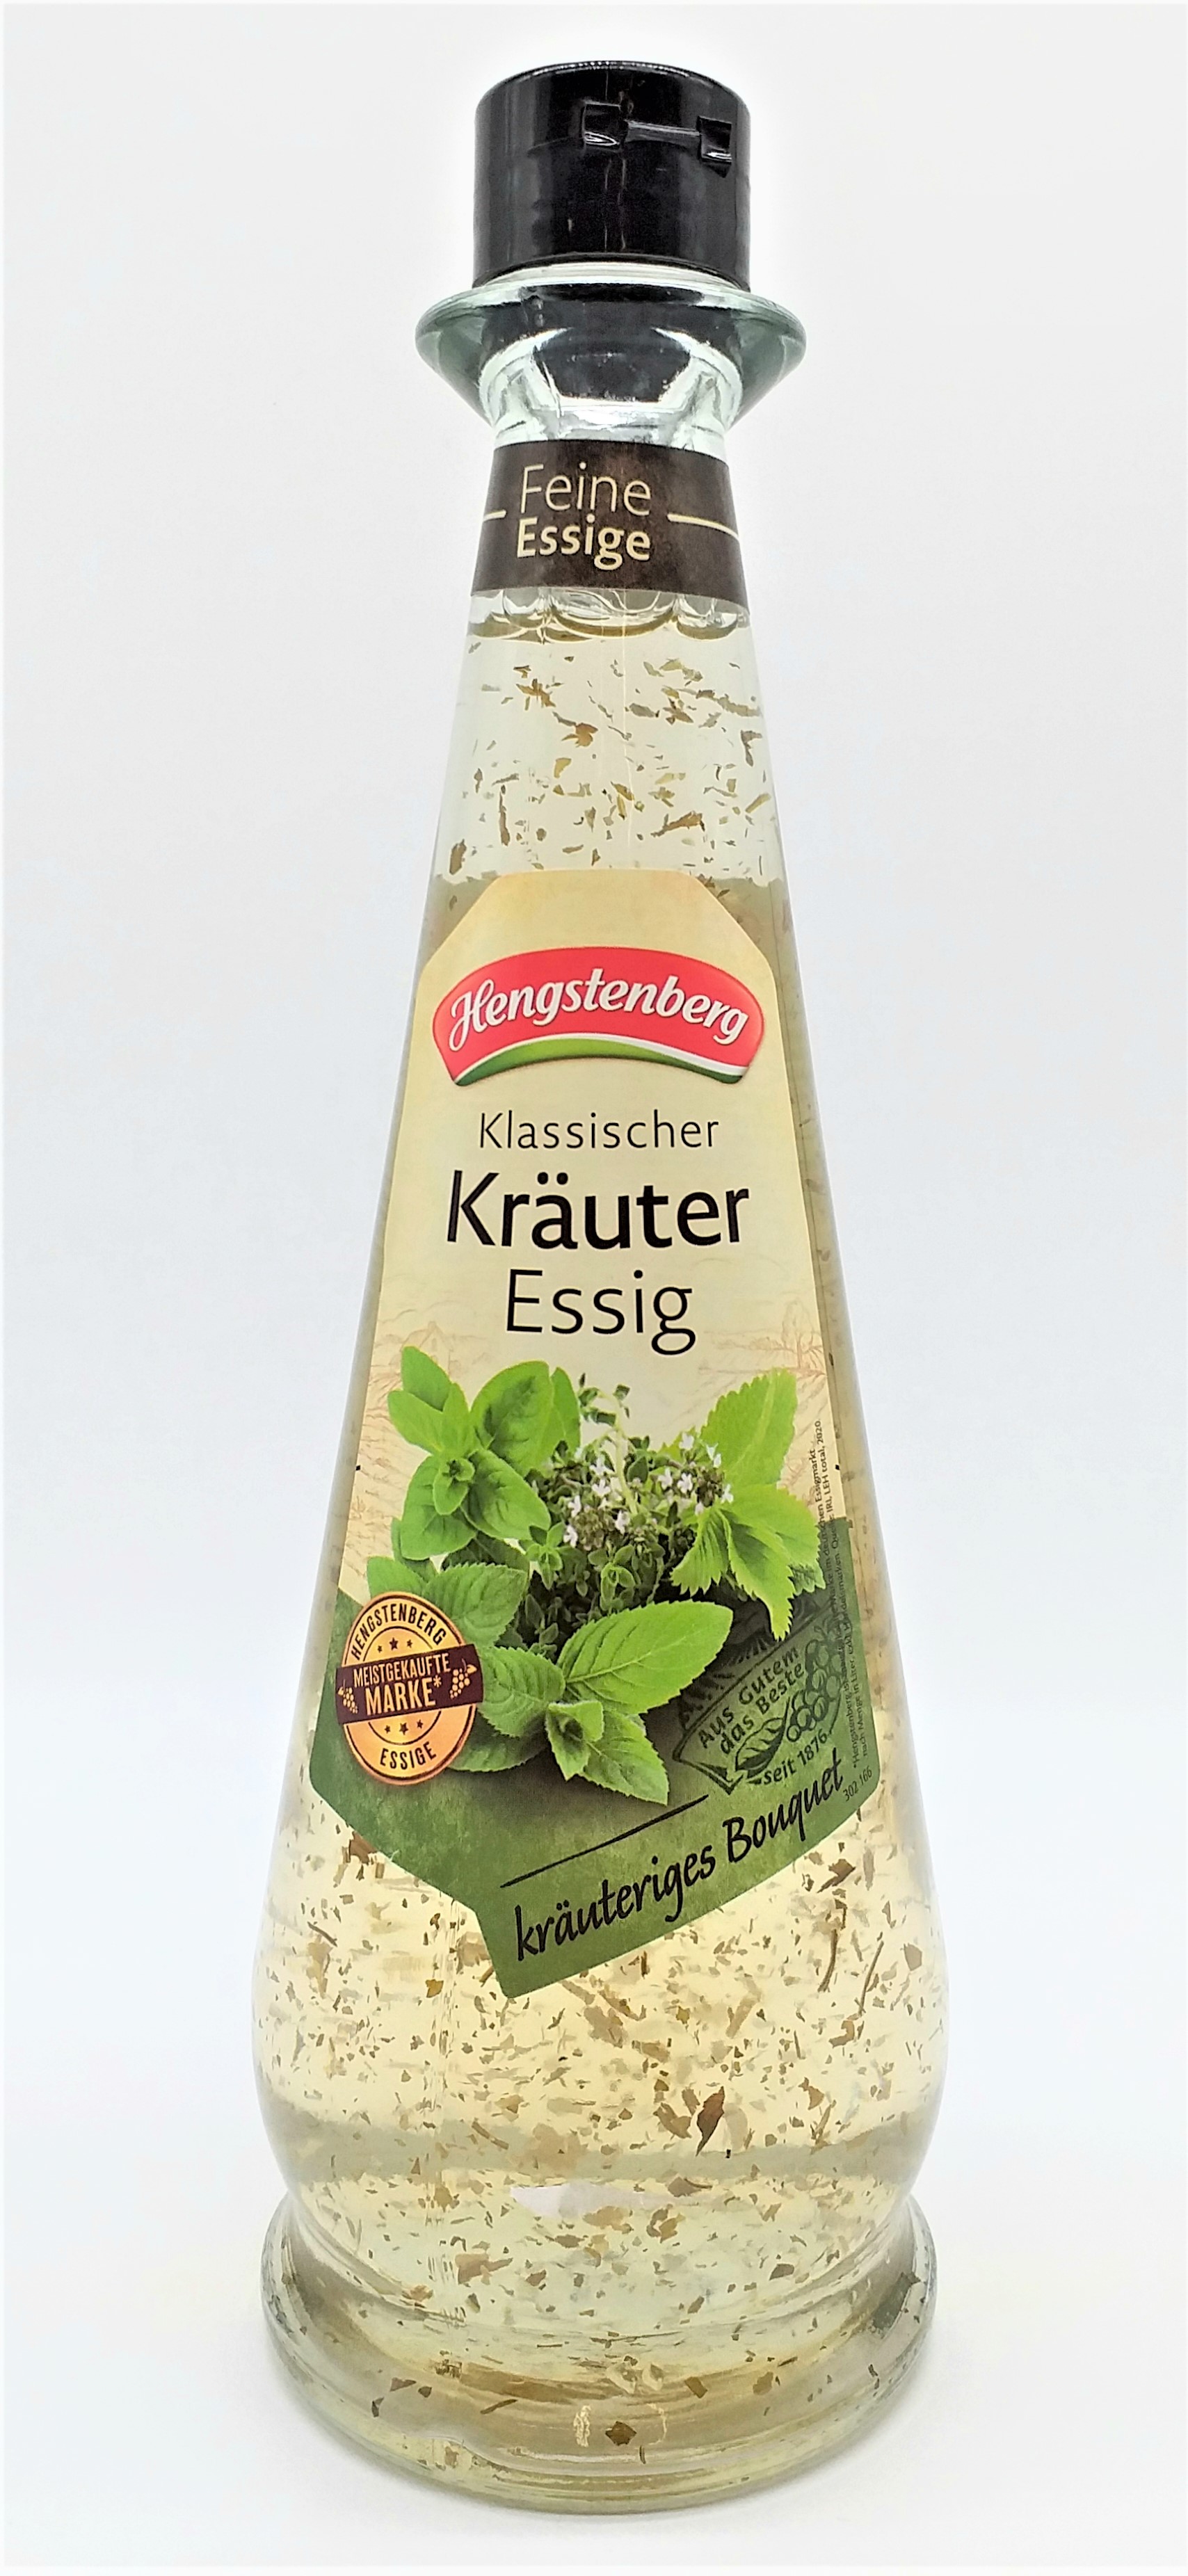 Hengstenberg Klassischer Kräuter Essig 5% 0,5l